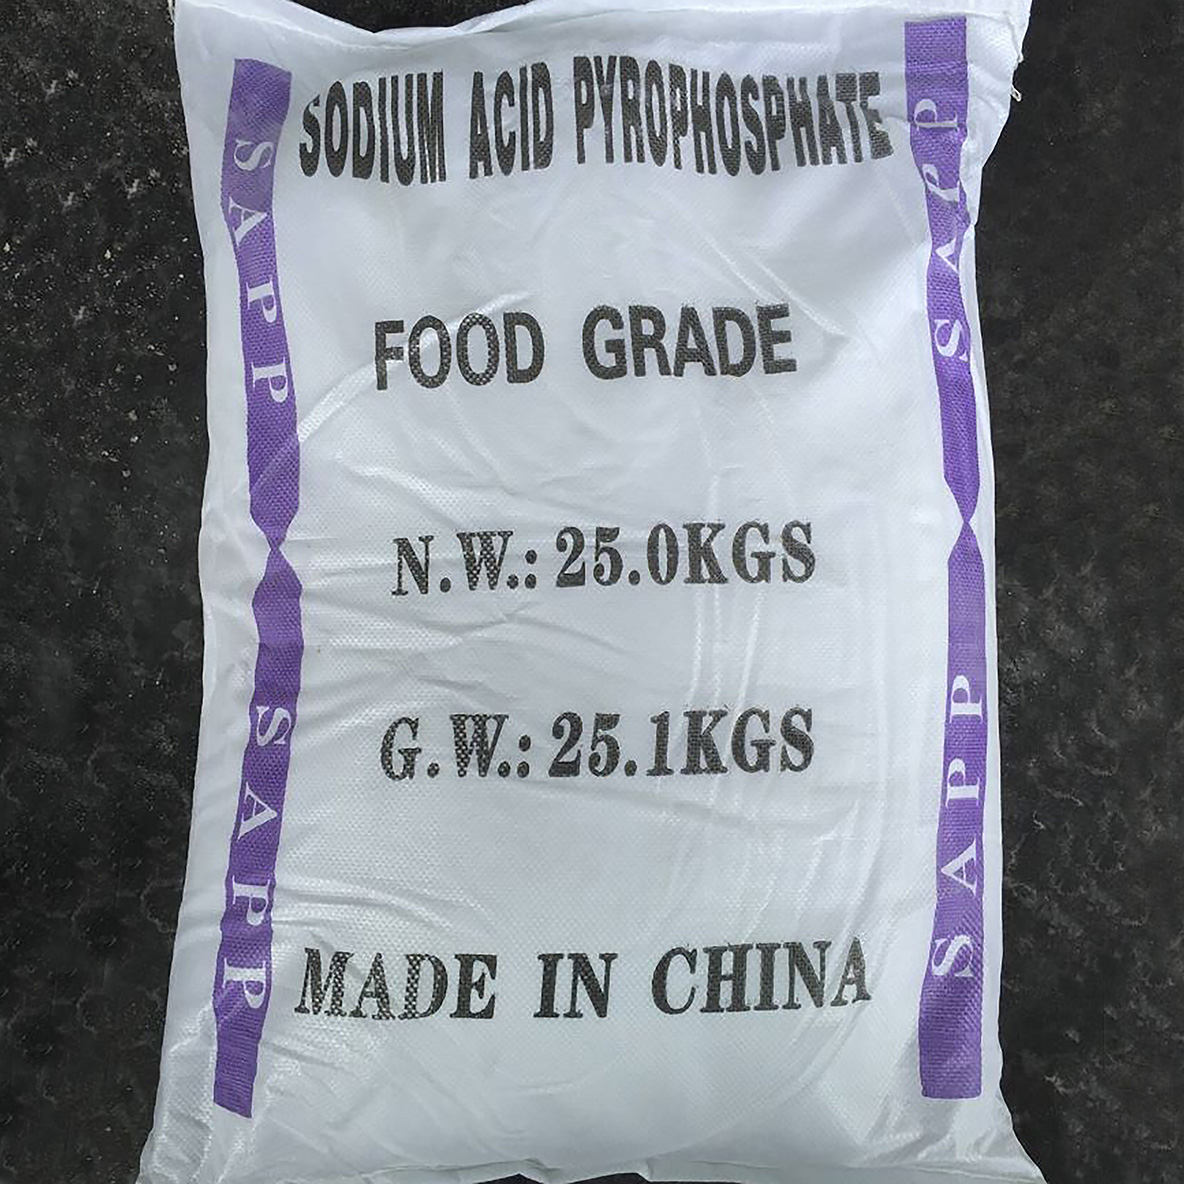 Pirofosfato de ácido sódico (SAPP)